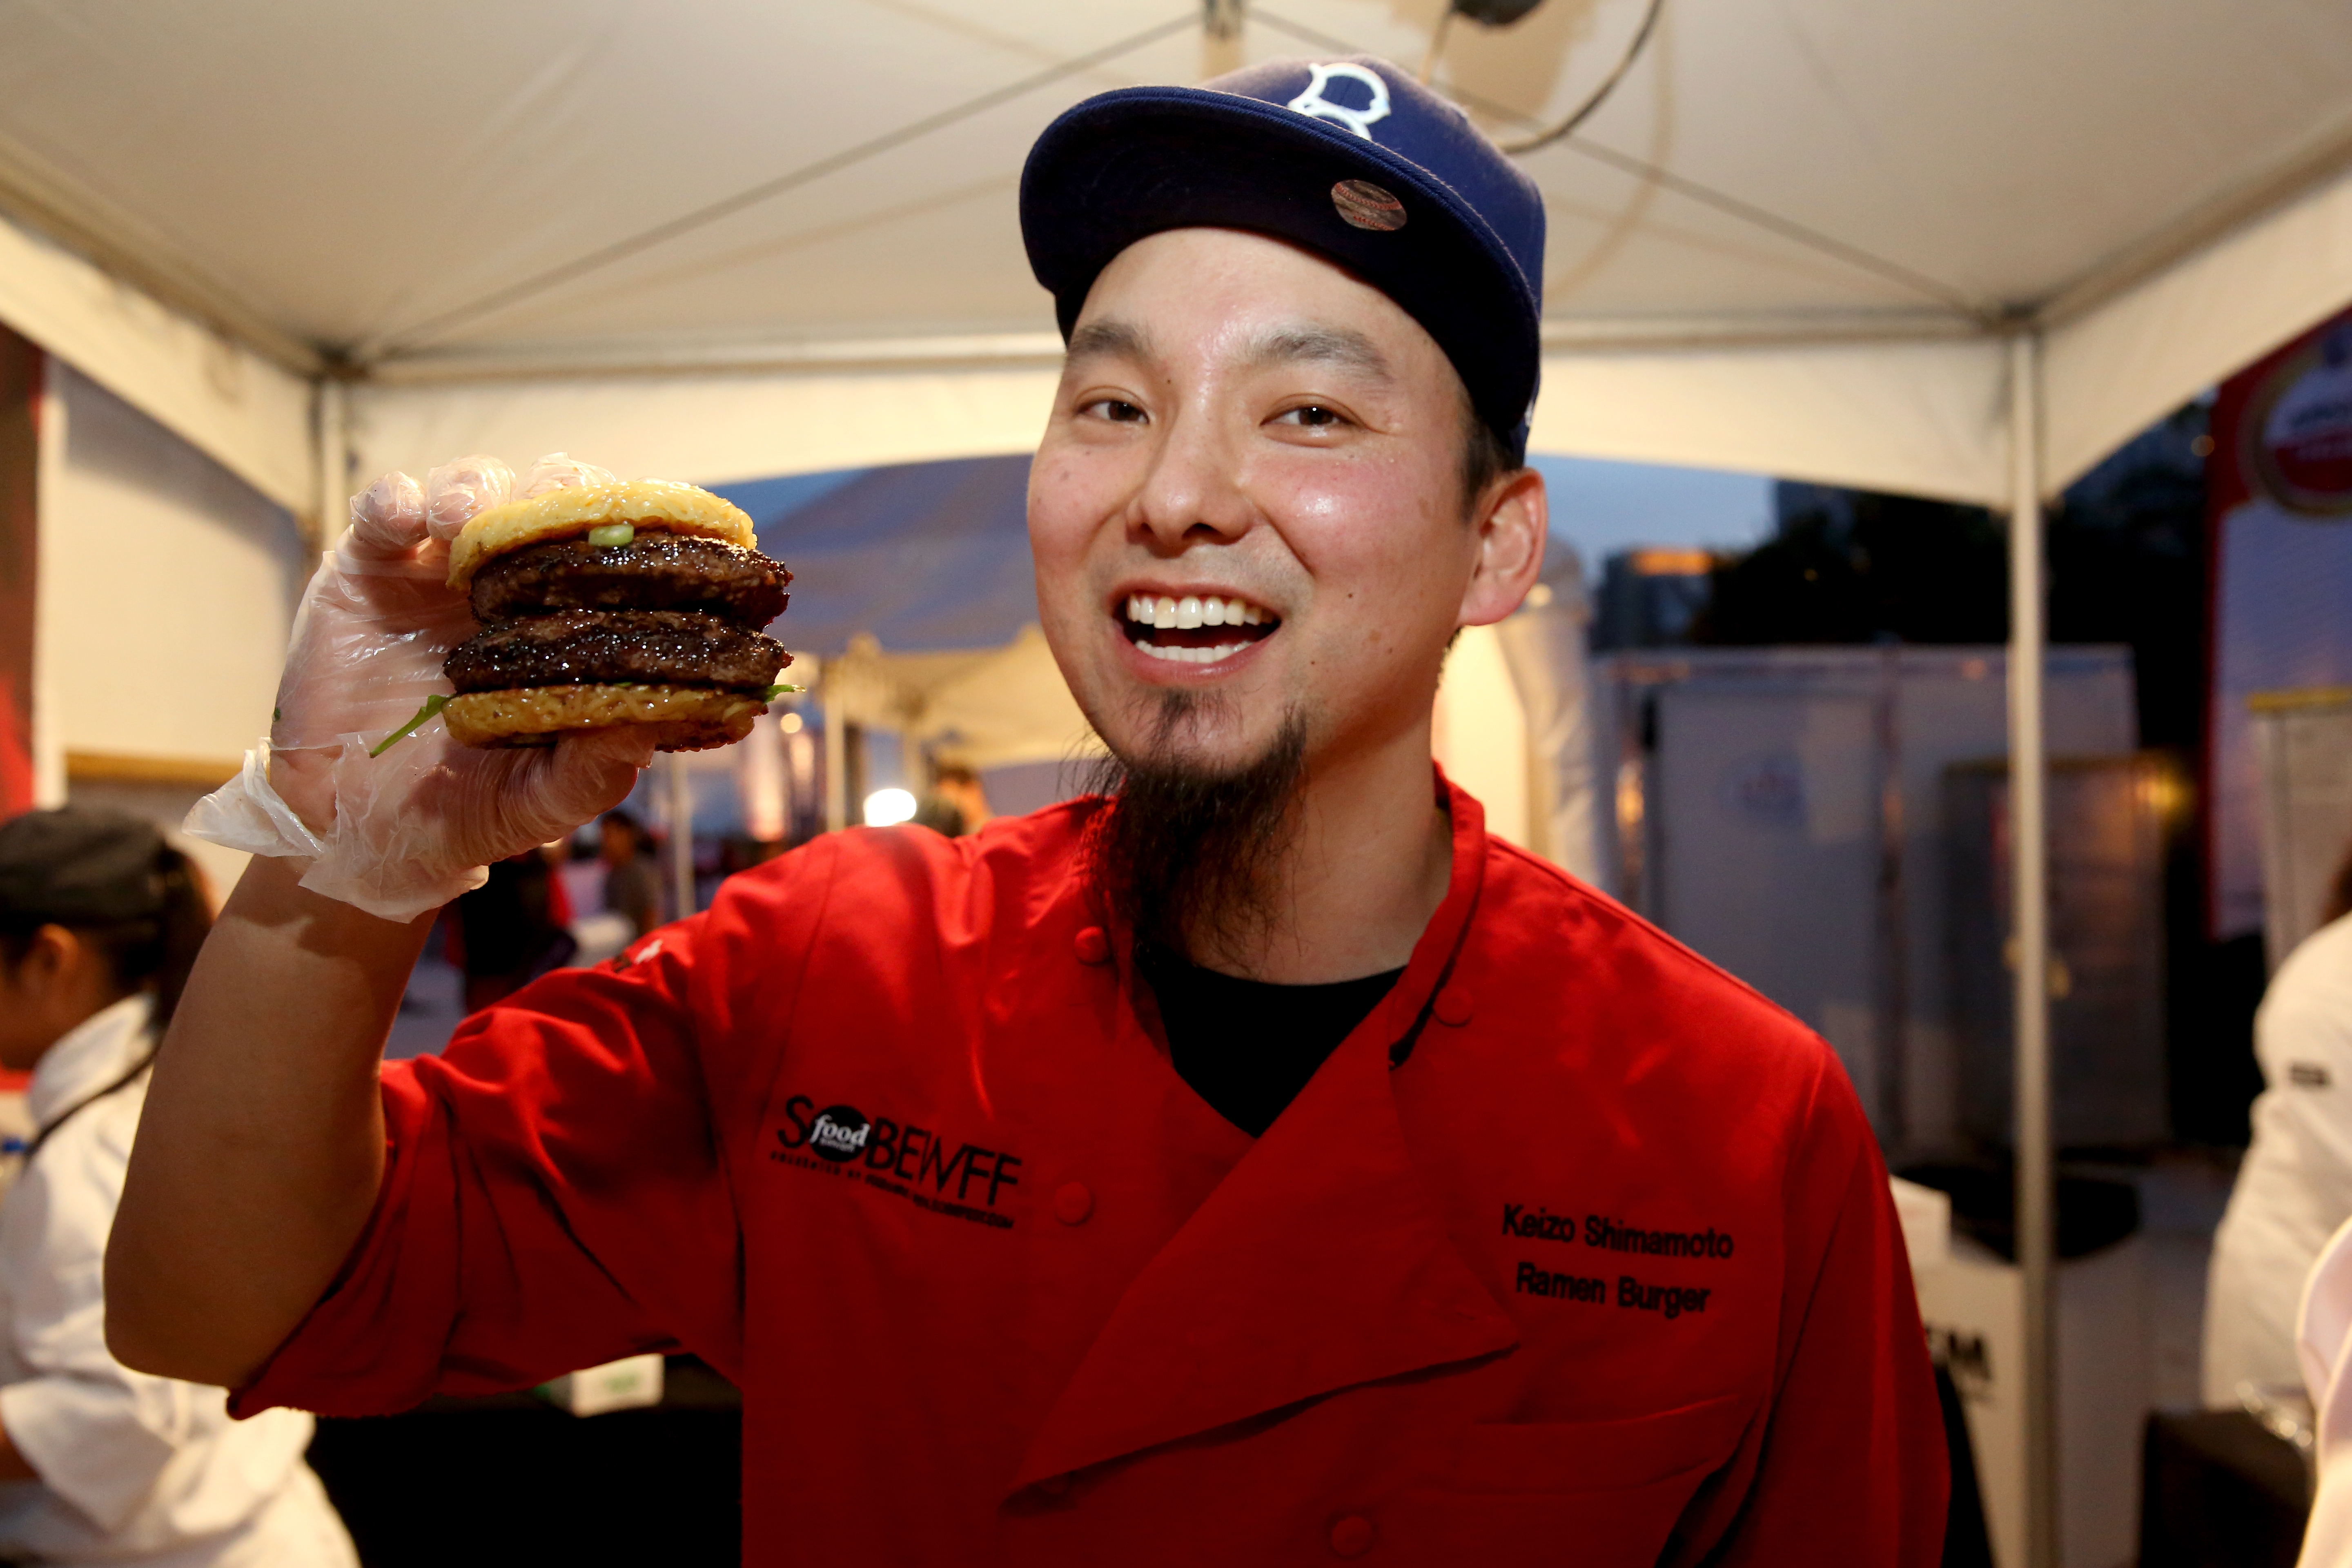 Keizo Shimamoto and his ramen burger